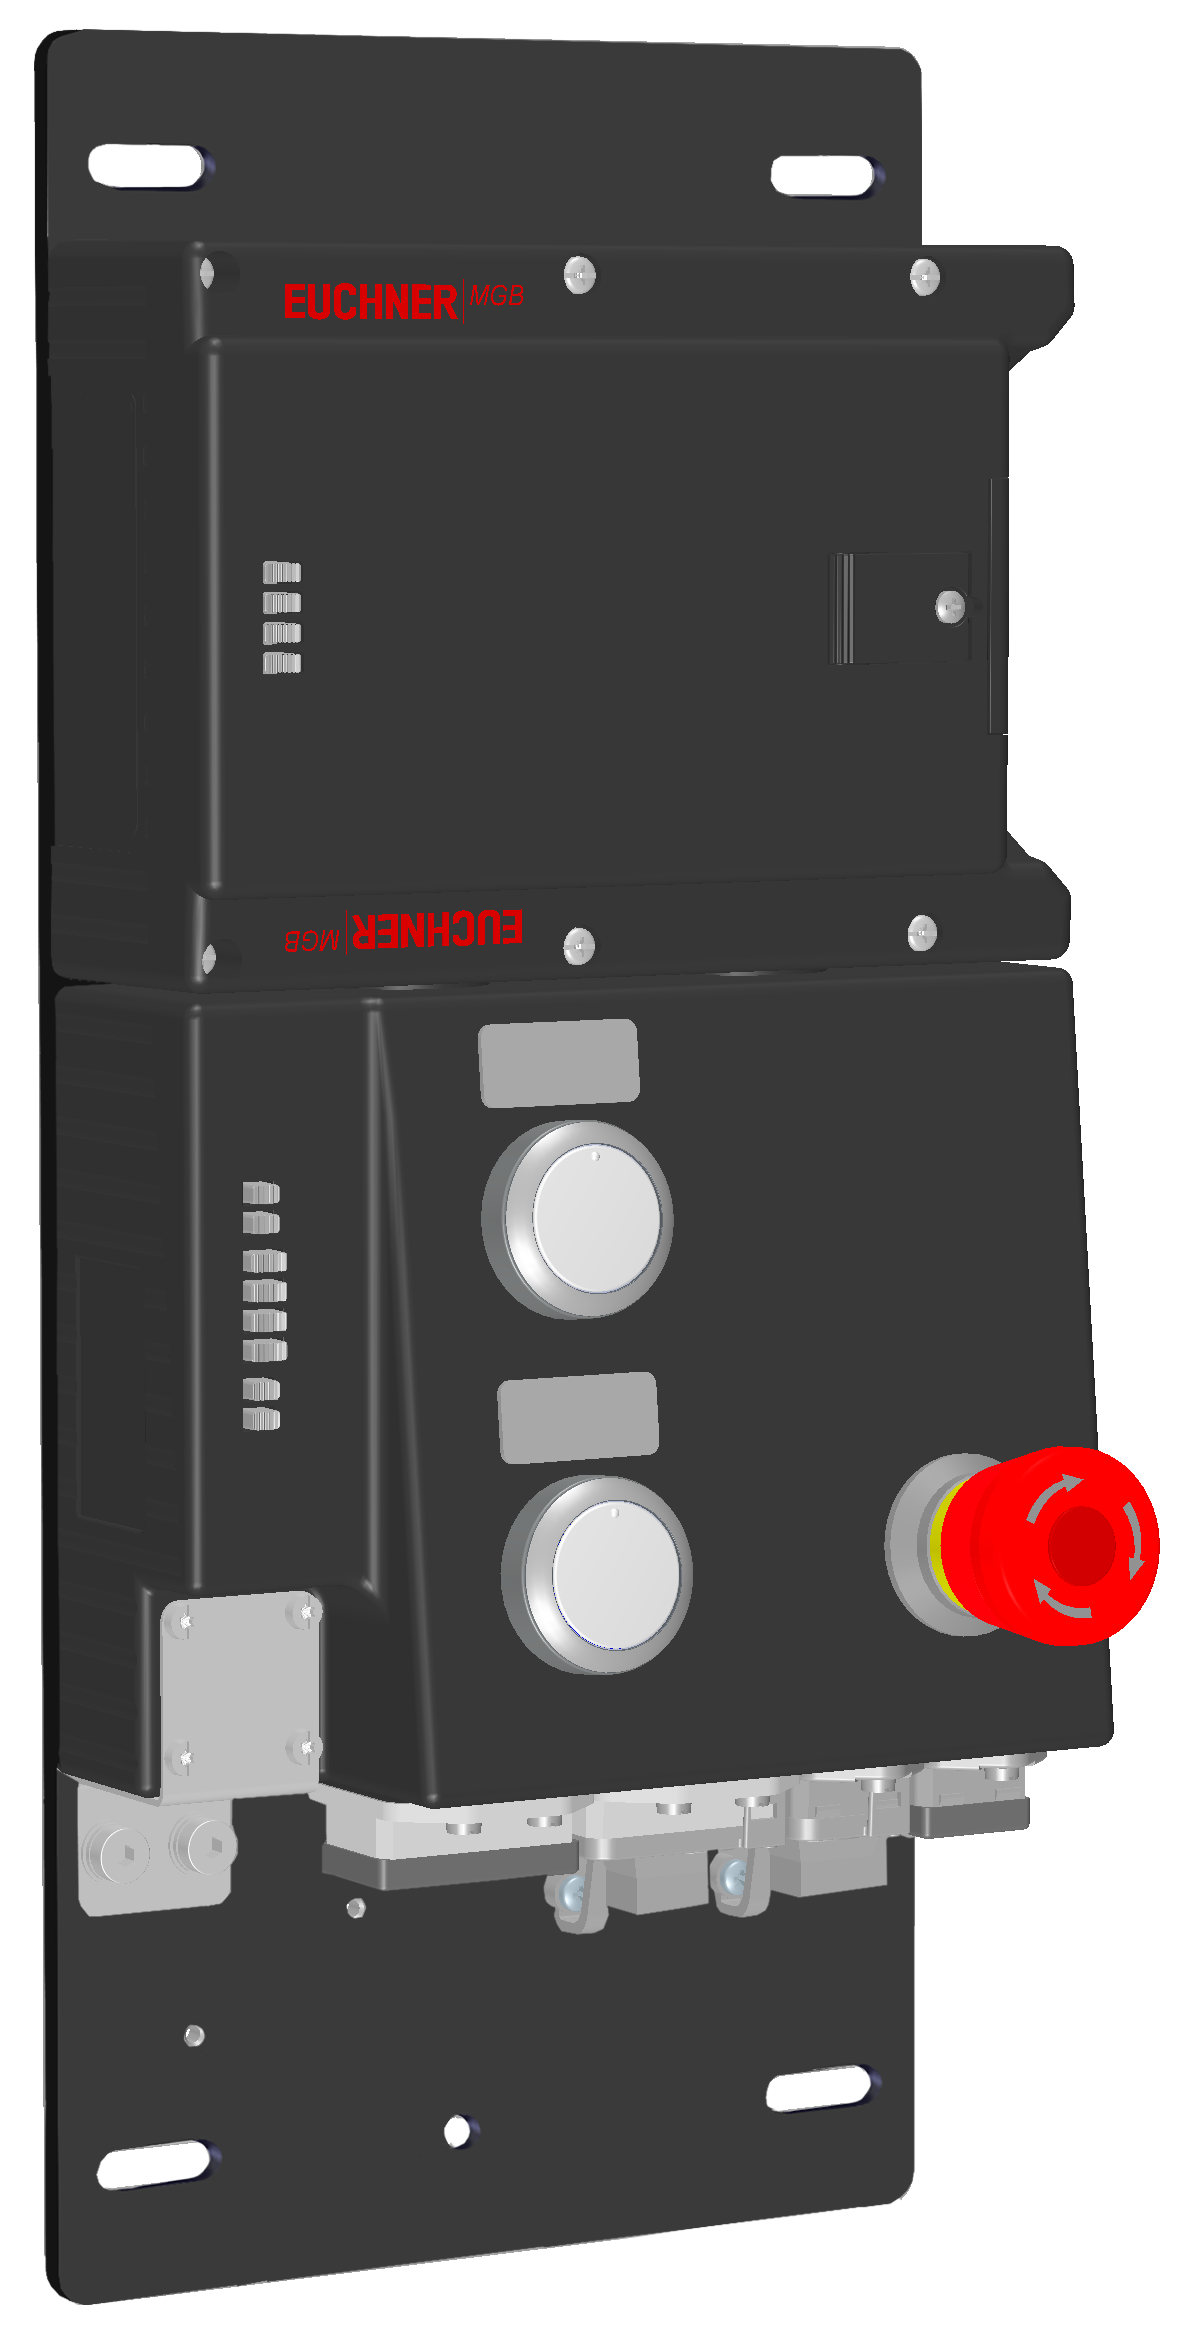 Locking modules MGB-L2B-PNA-R-121848  (Order no. 121848)